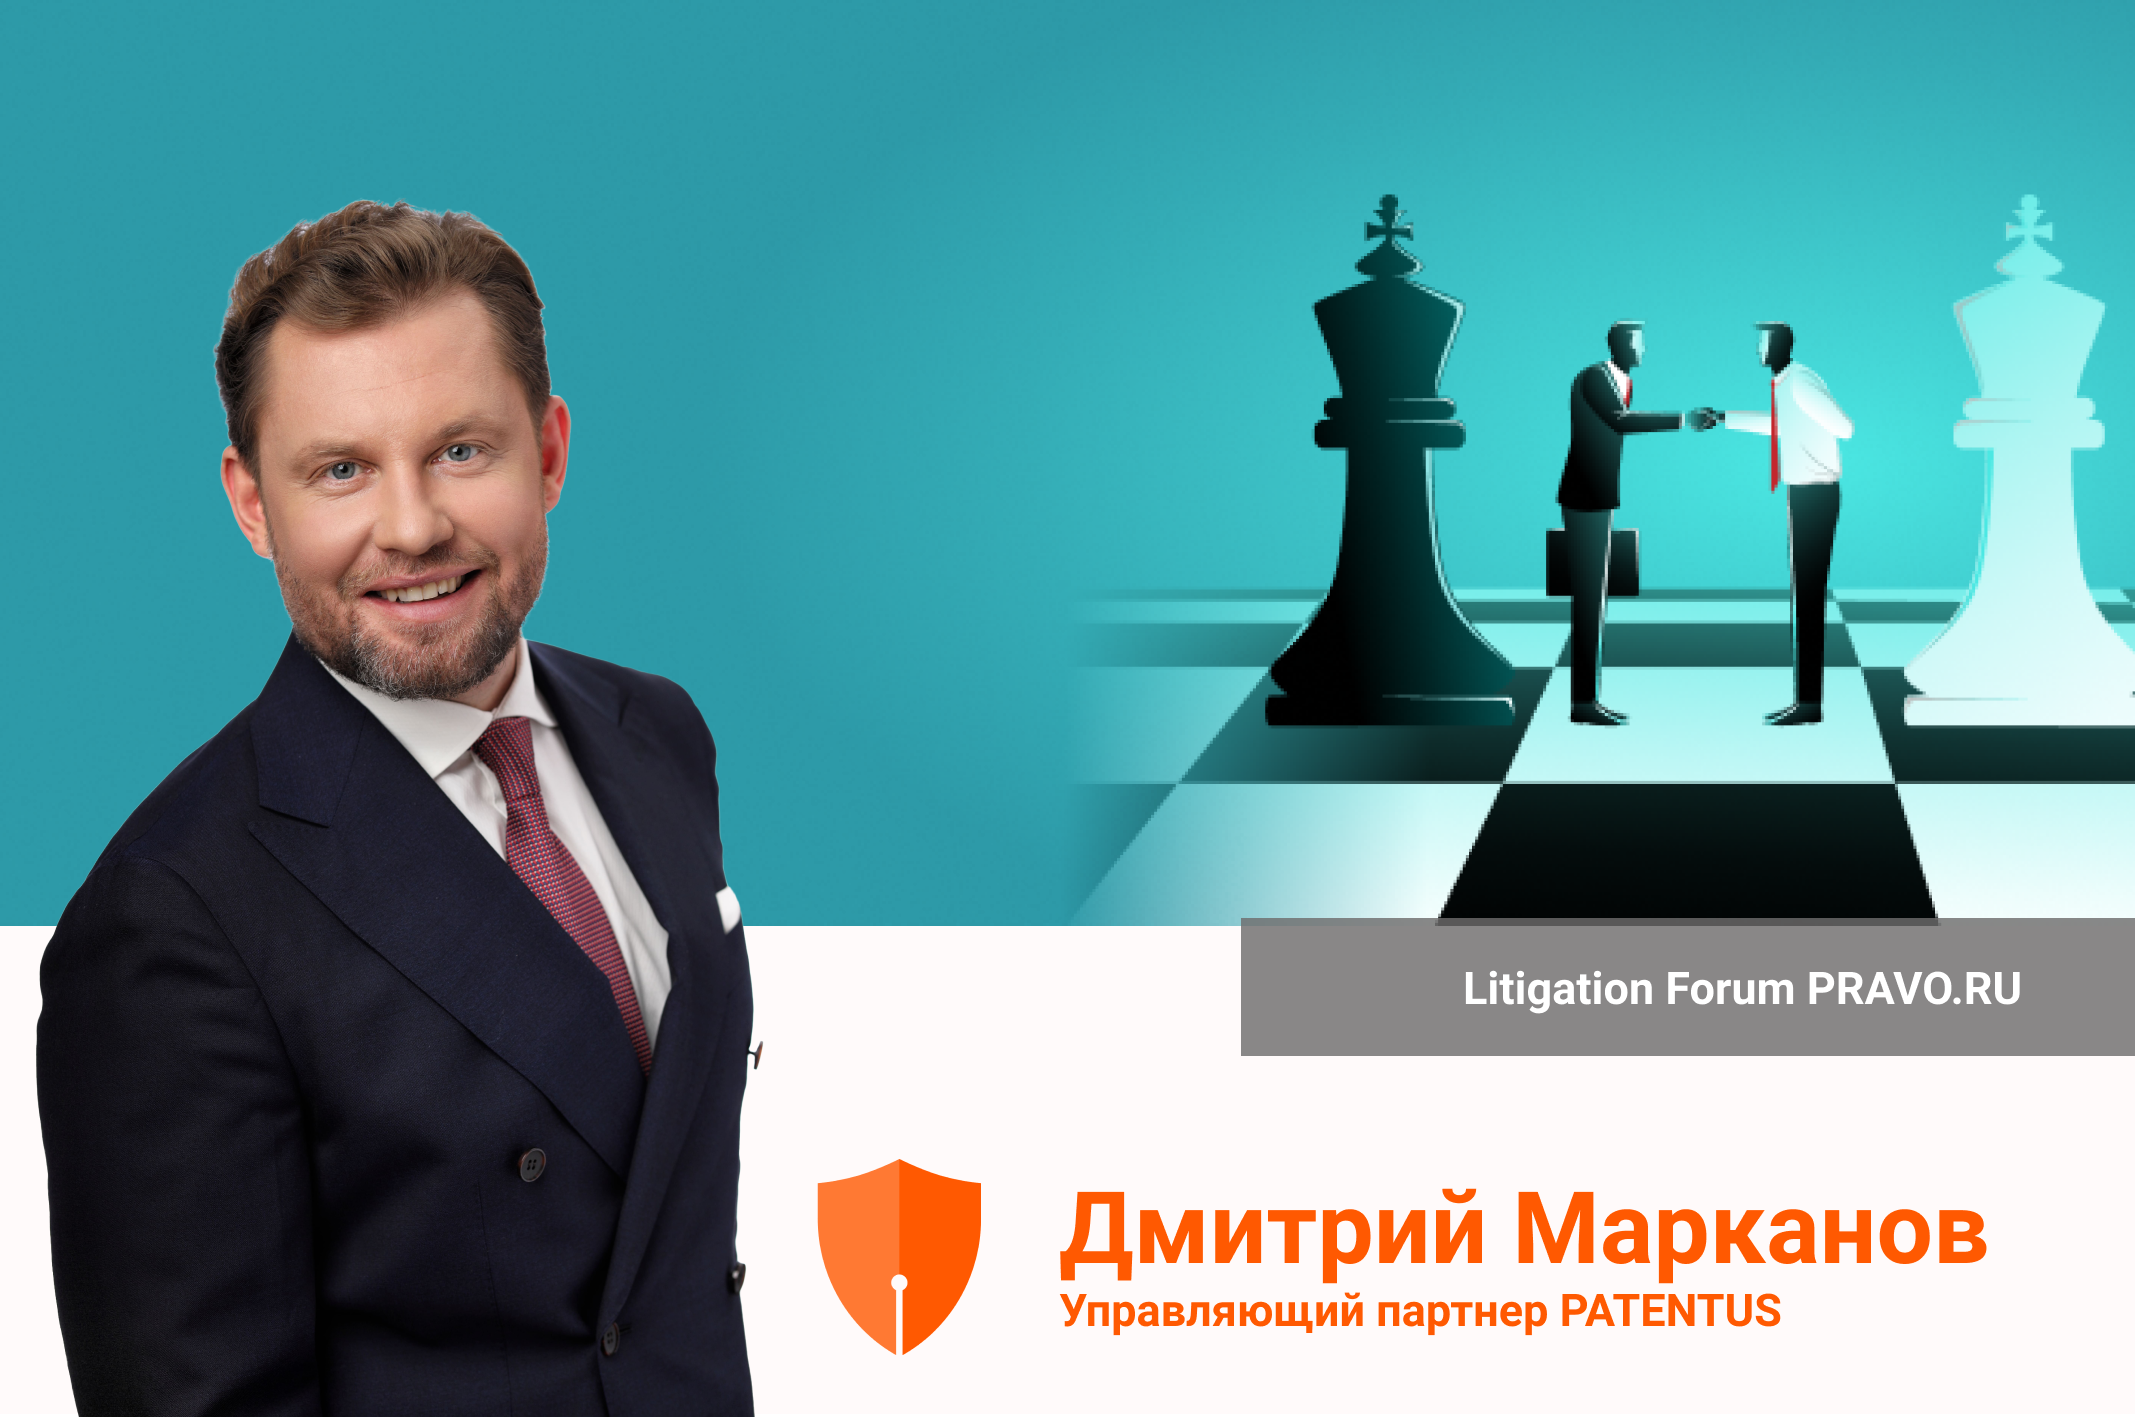 Гроссмейстеры судебных споров встретятся на Litigation Forum Pravo.ru